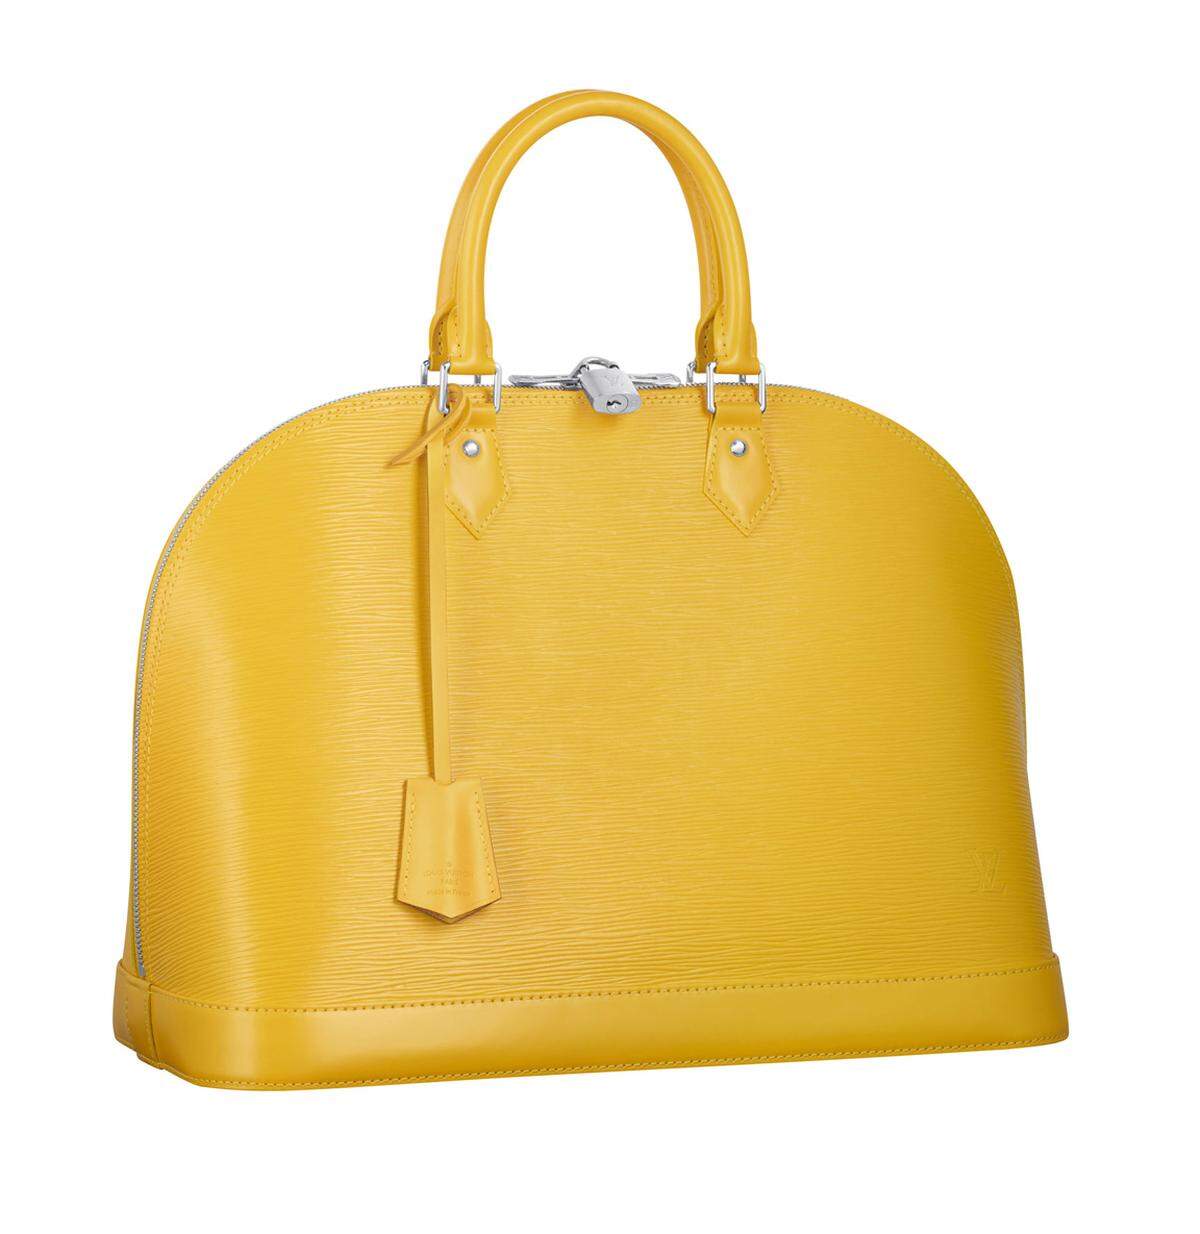 In Gelb sticht die Tasche von Louis Vuitton noch mehr ins Auge.